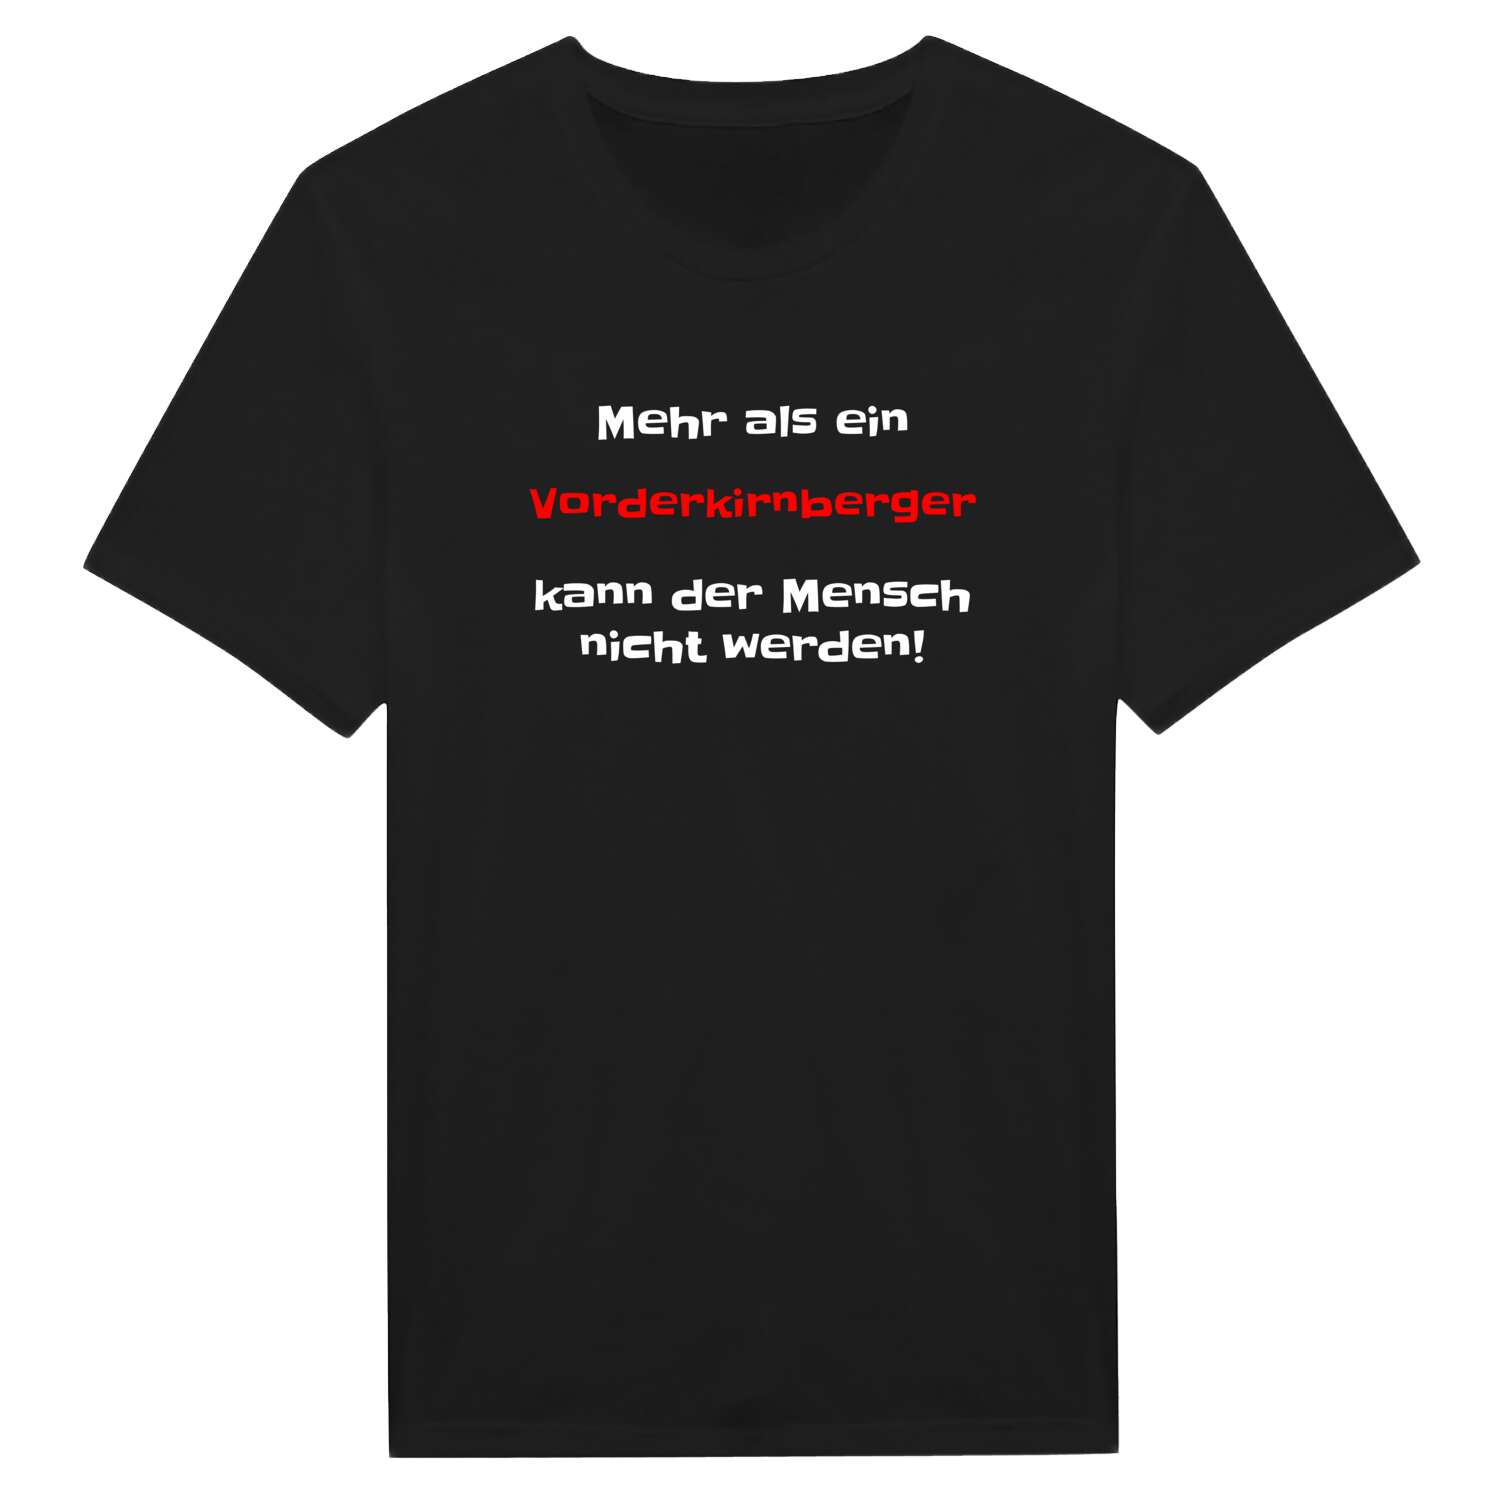 Vorderkirnberg T-Shirt »Mehr als ein«